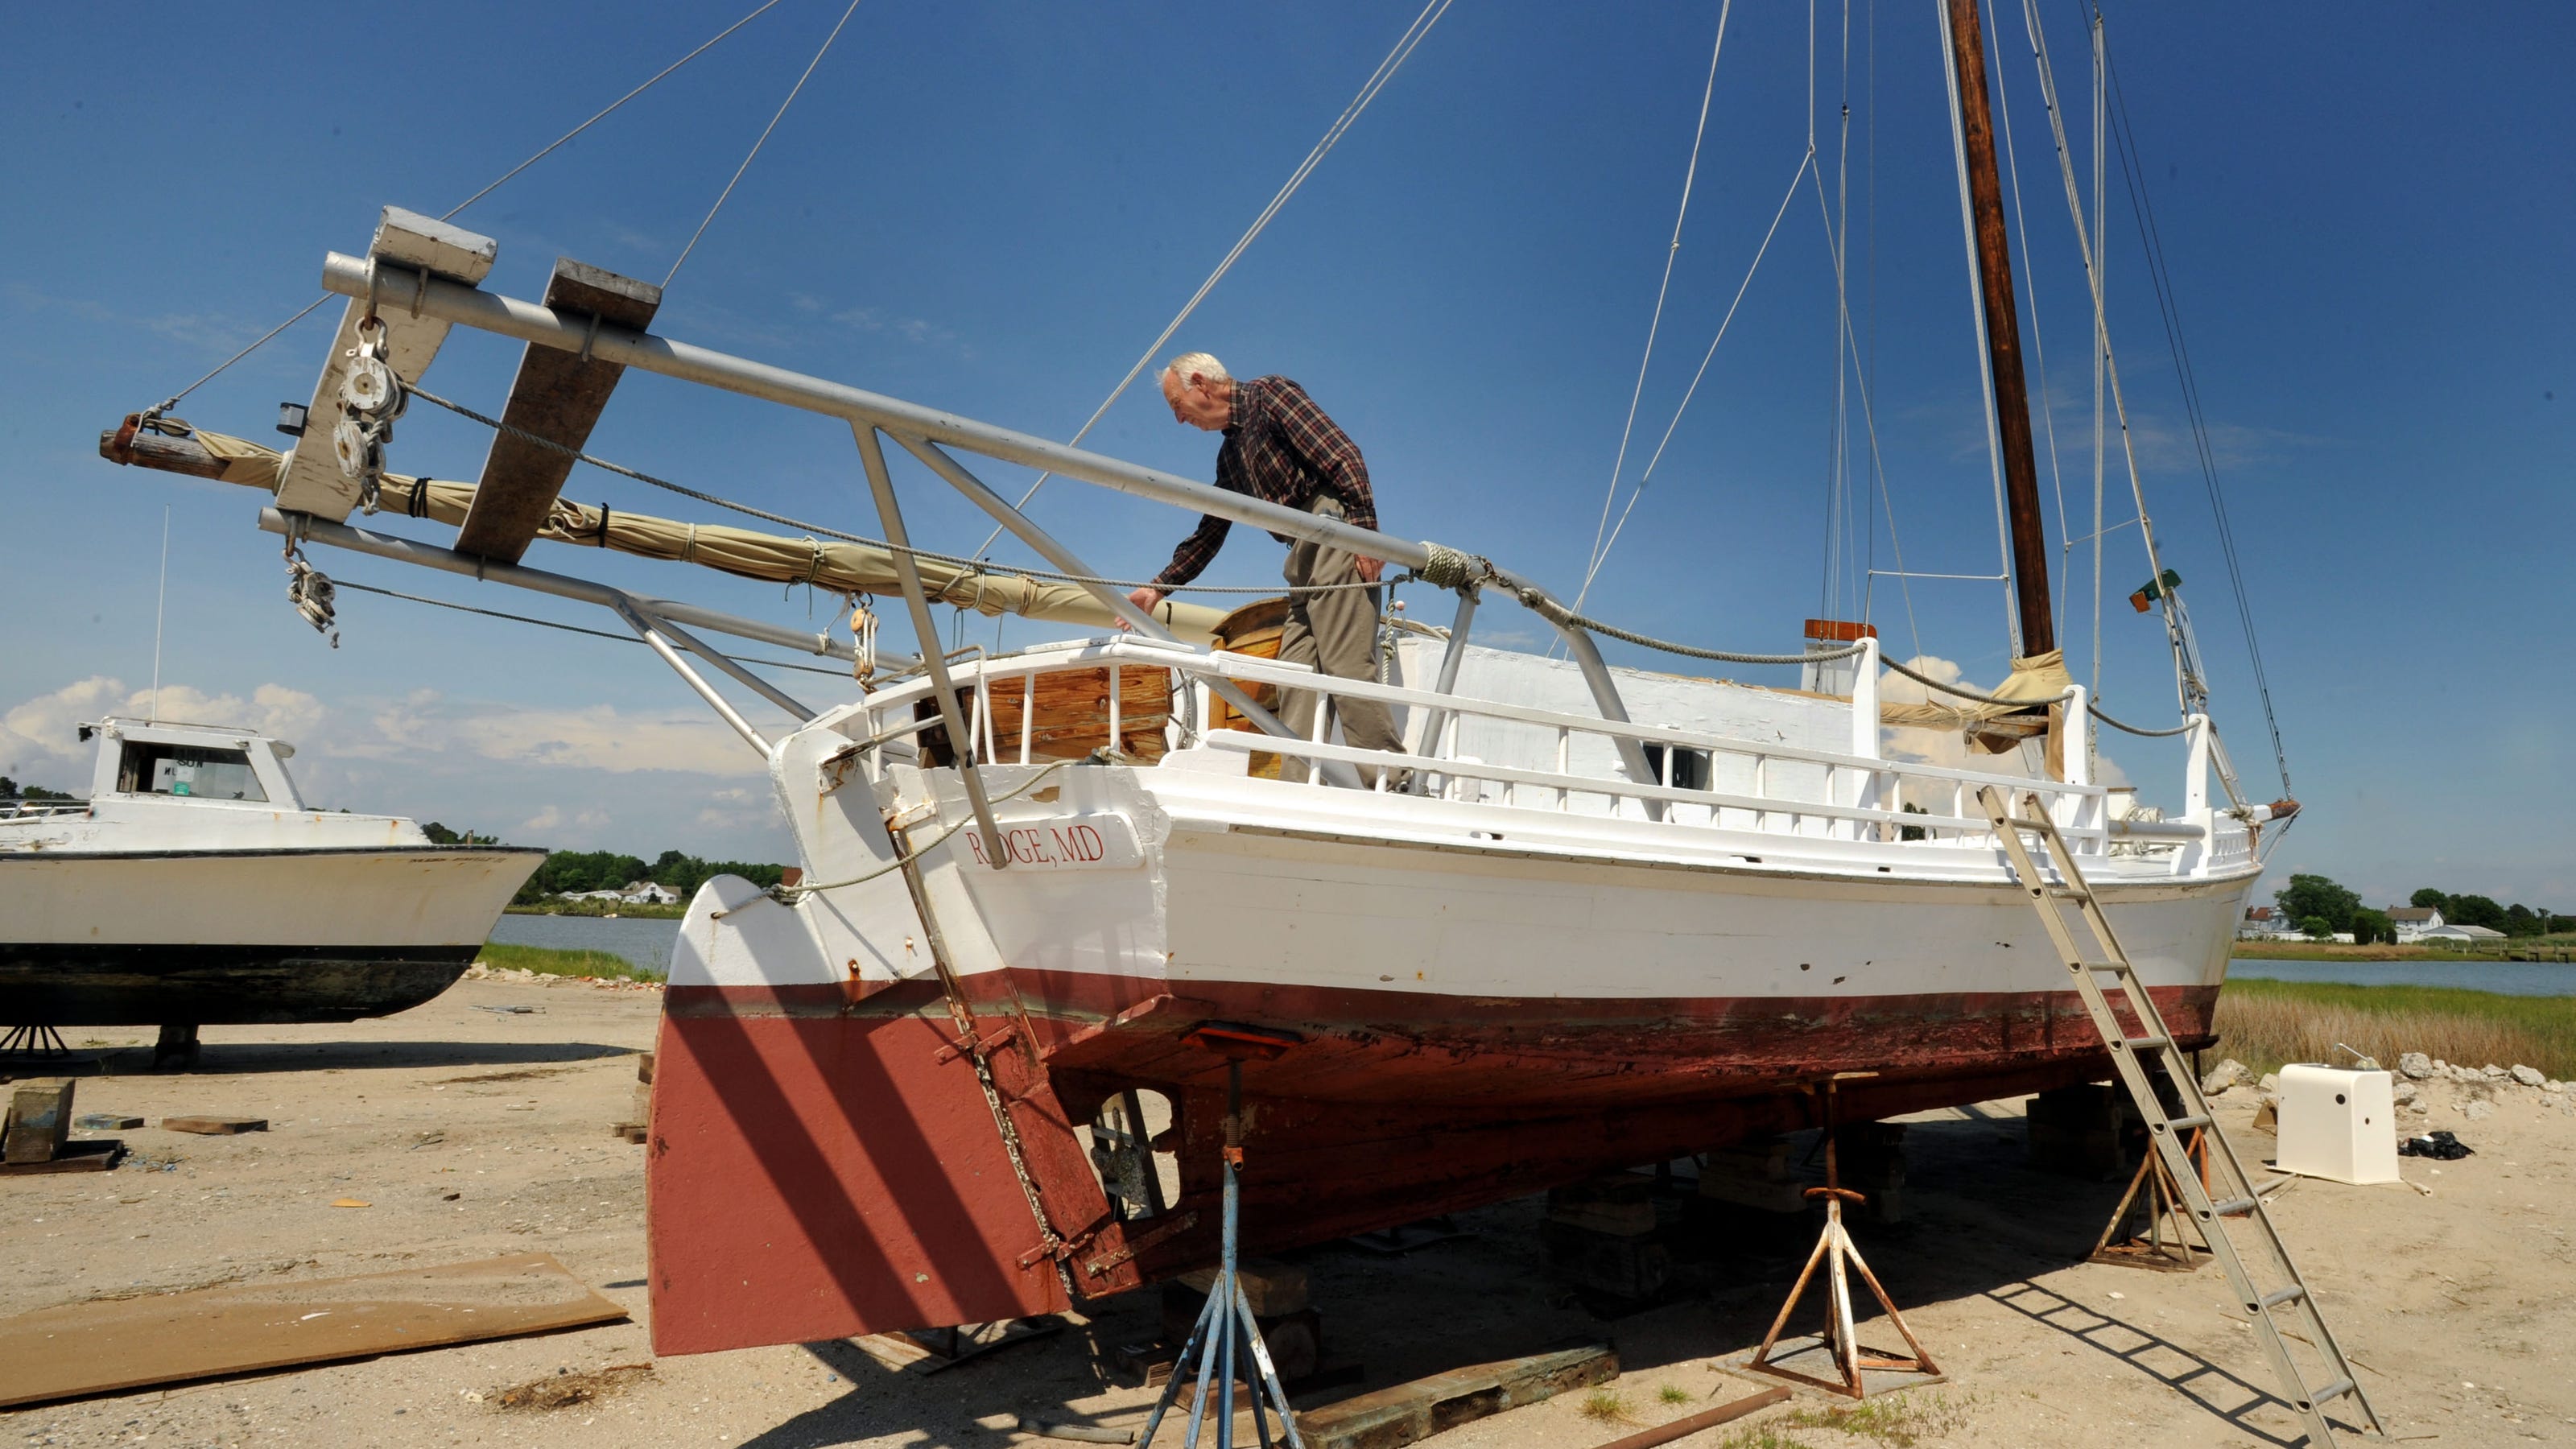 skipjack sailboat for sale